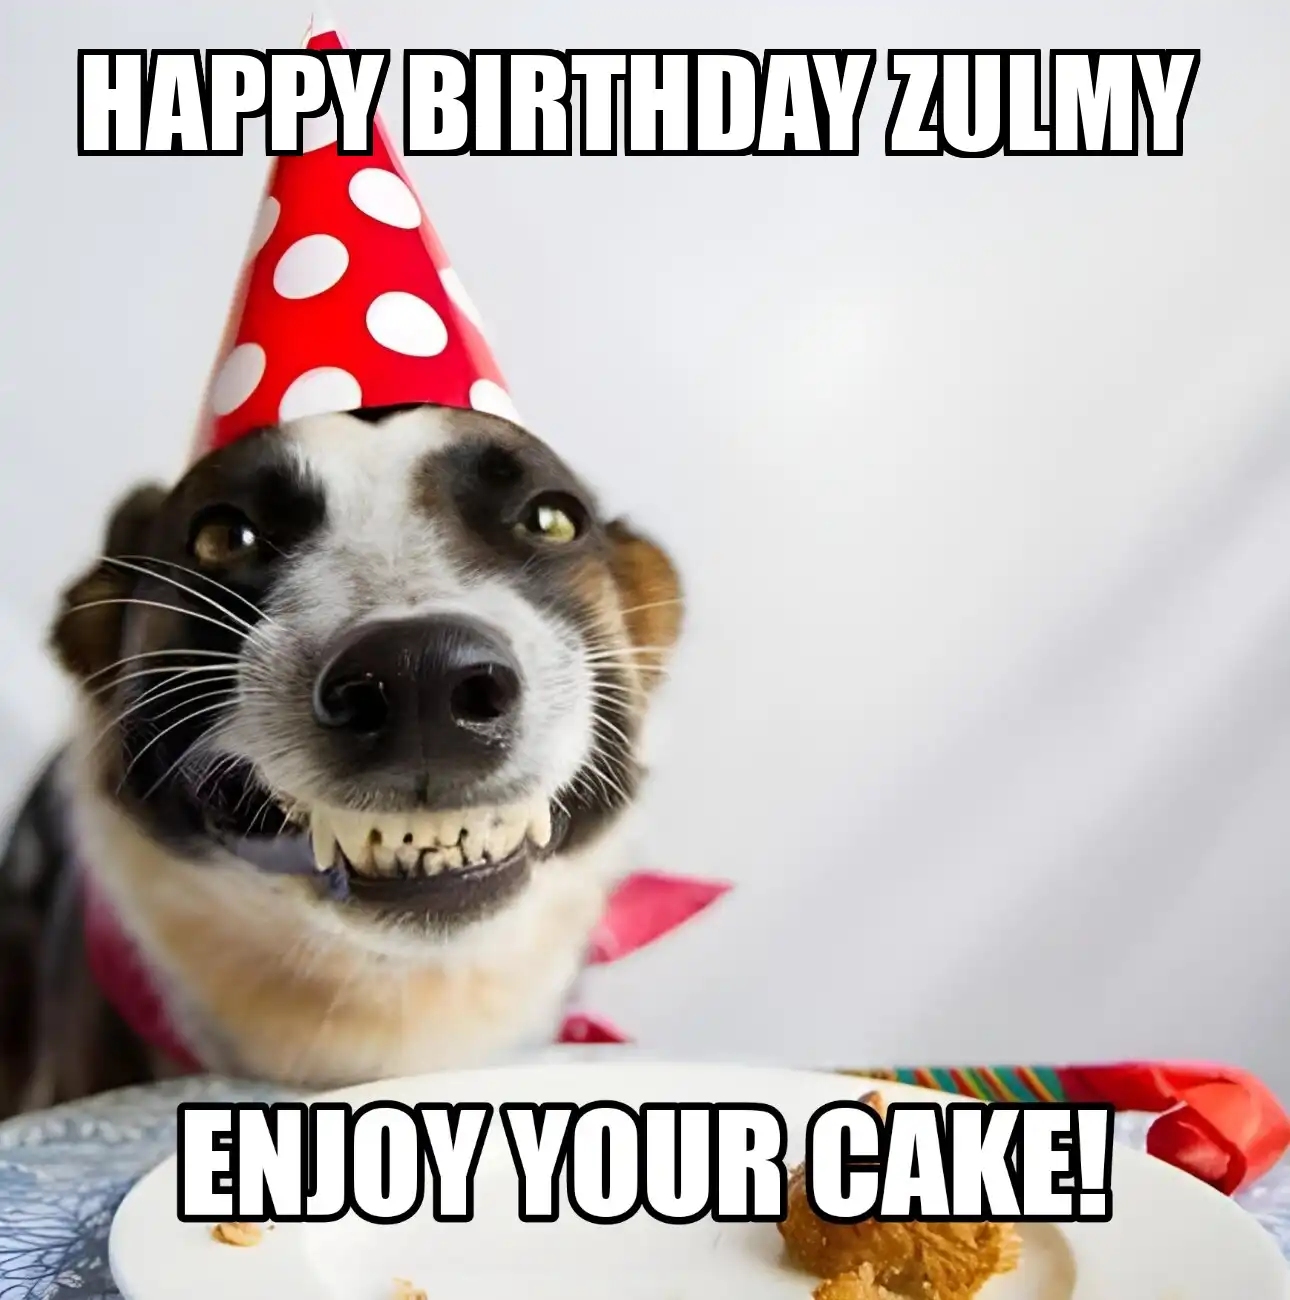 Happy Birthday Zulmy Enjoy Your Cake Dog Meme